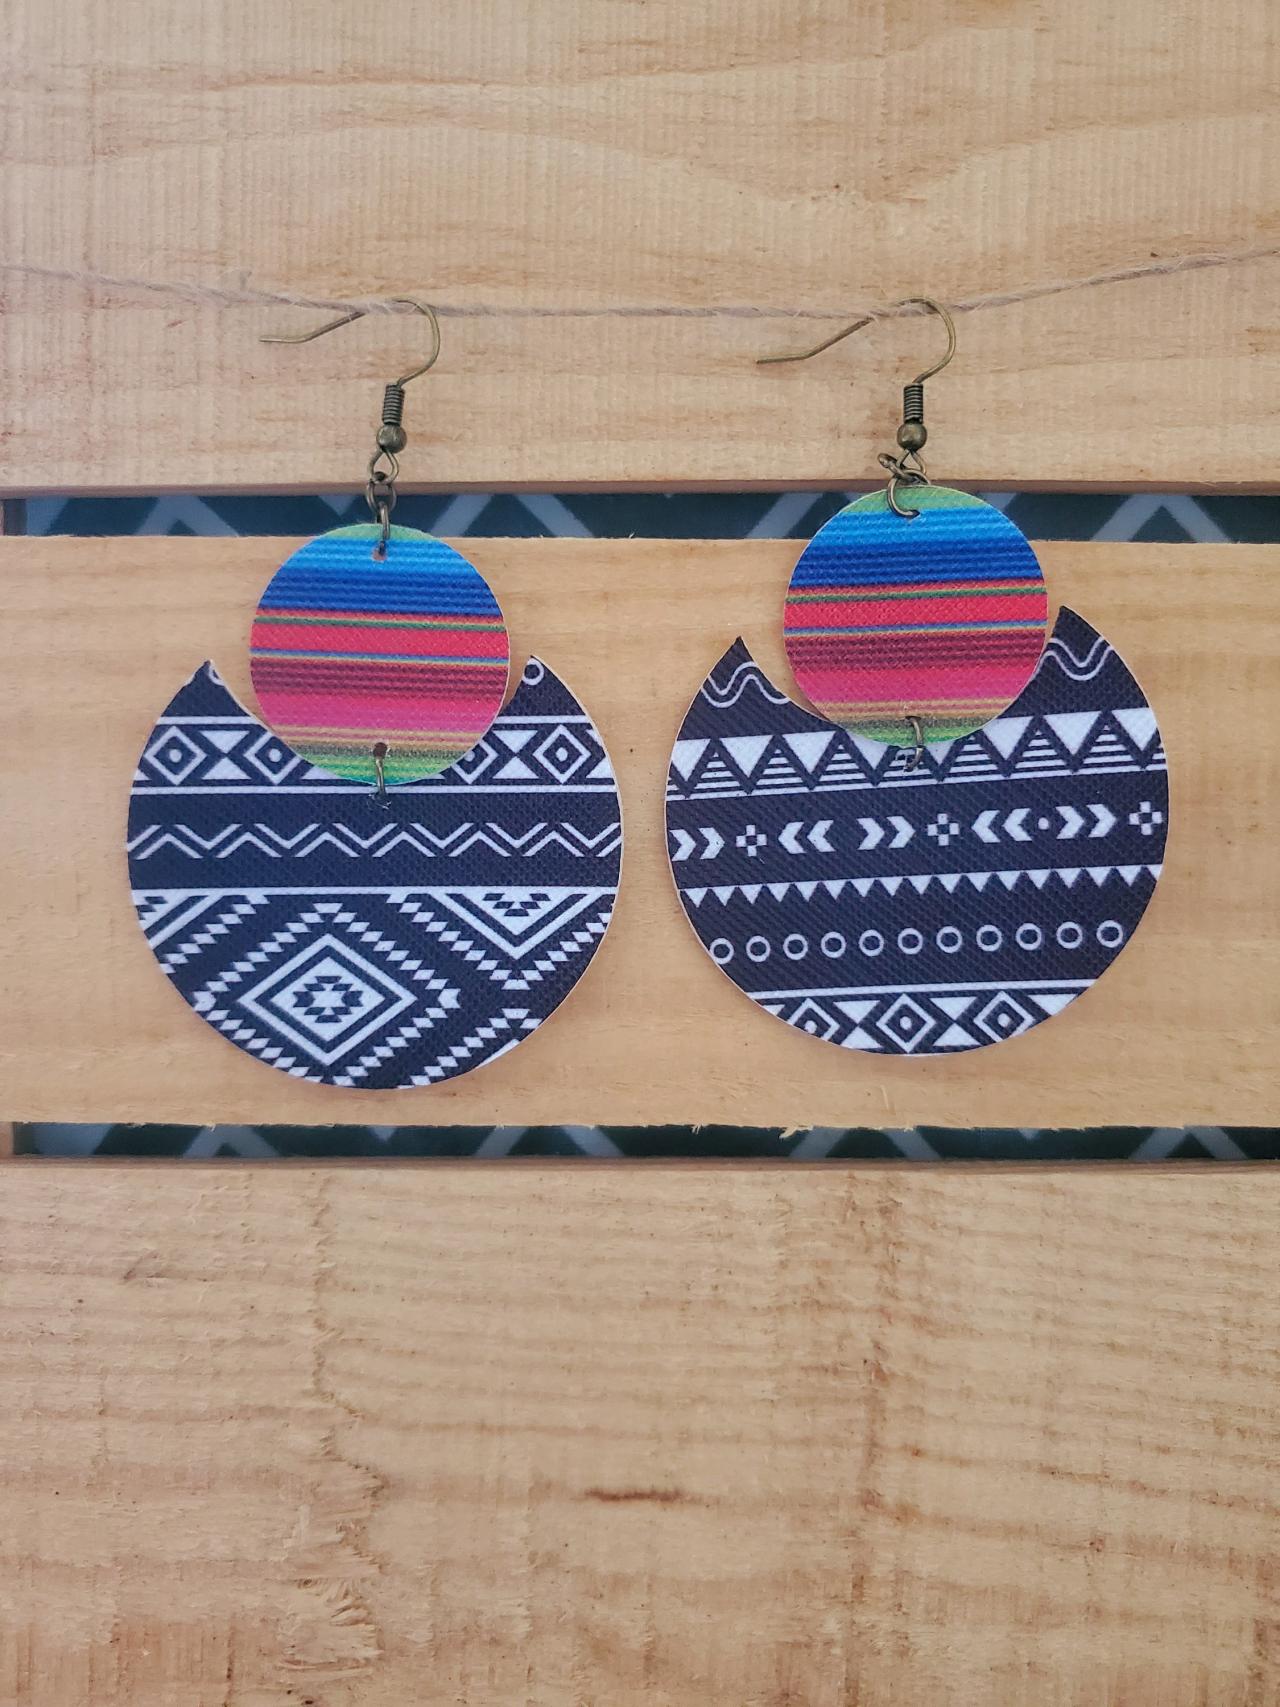 Aztec Leather Earrings, Serape Leather Earrings, Tribal Earrings, Boho Leather Earrings, Split Leather Earrings, Boho Chic, Aztec Jewelry